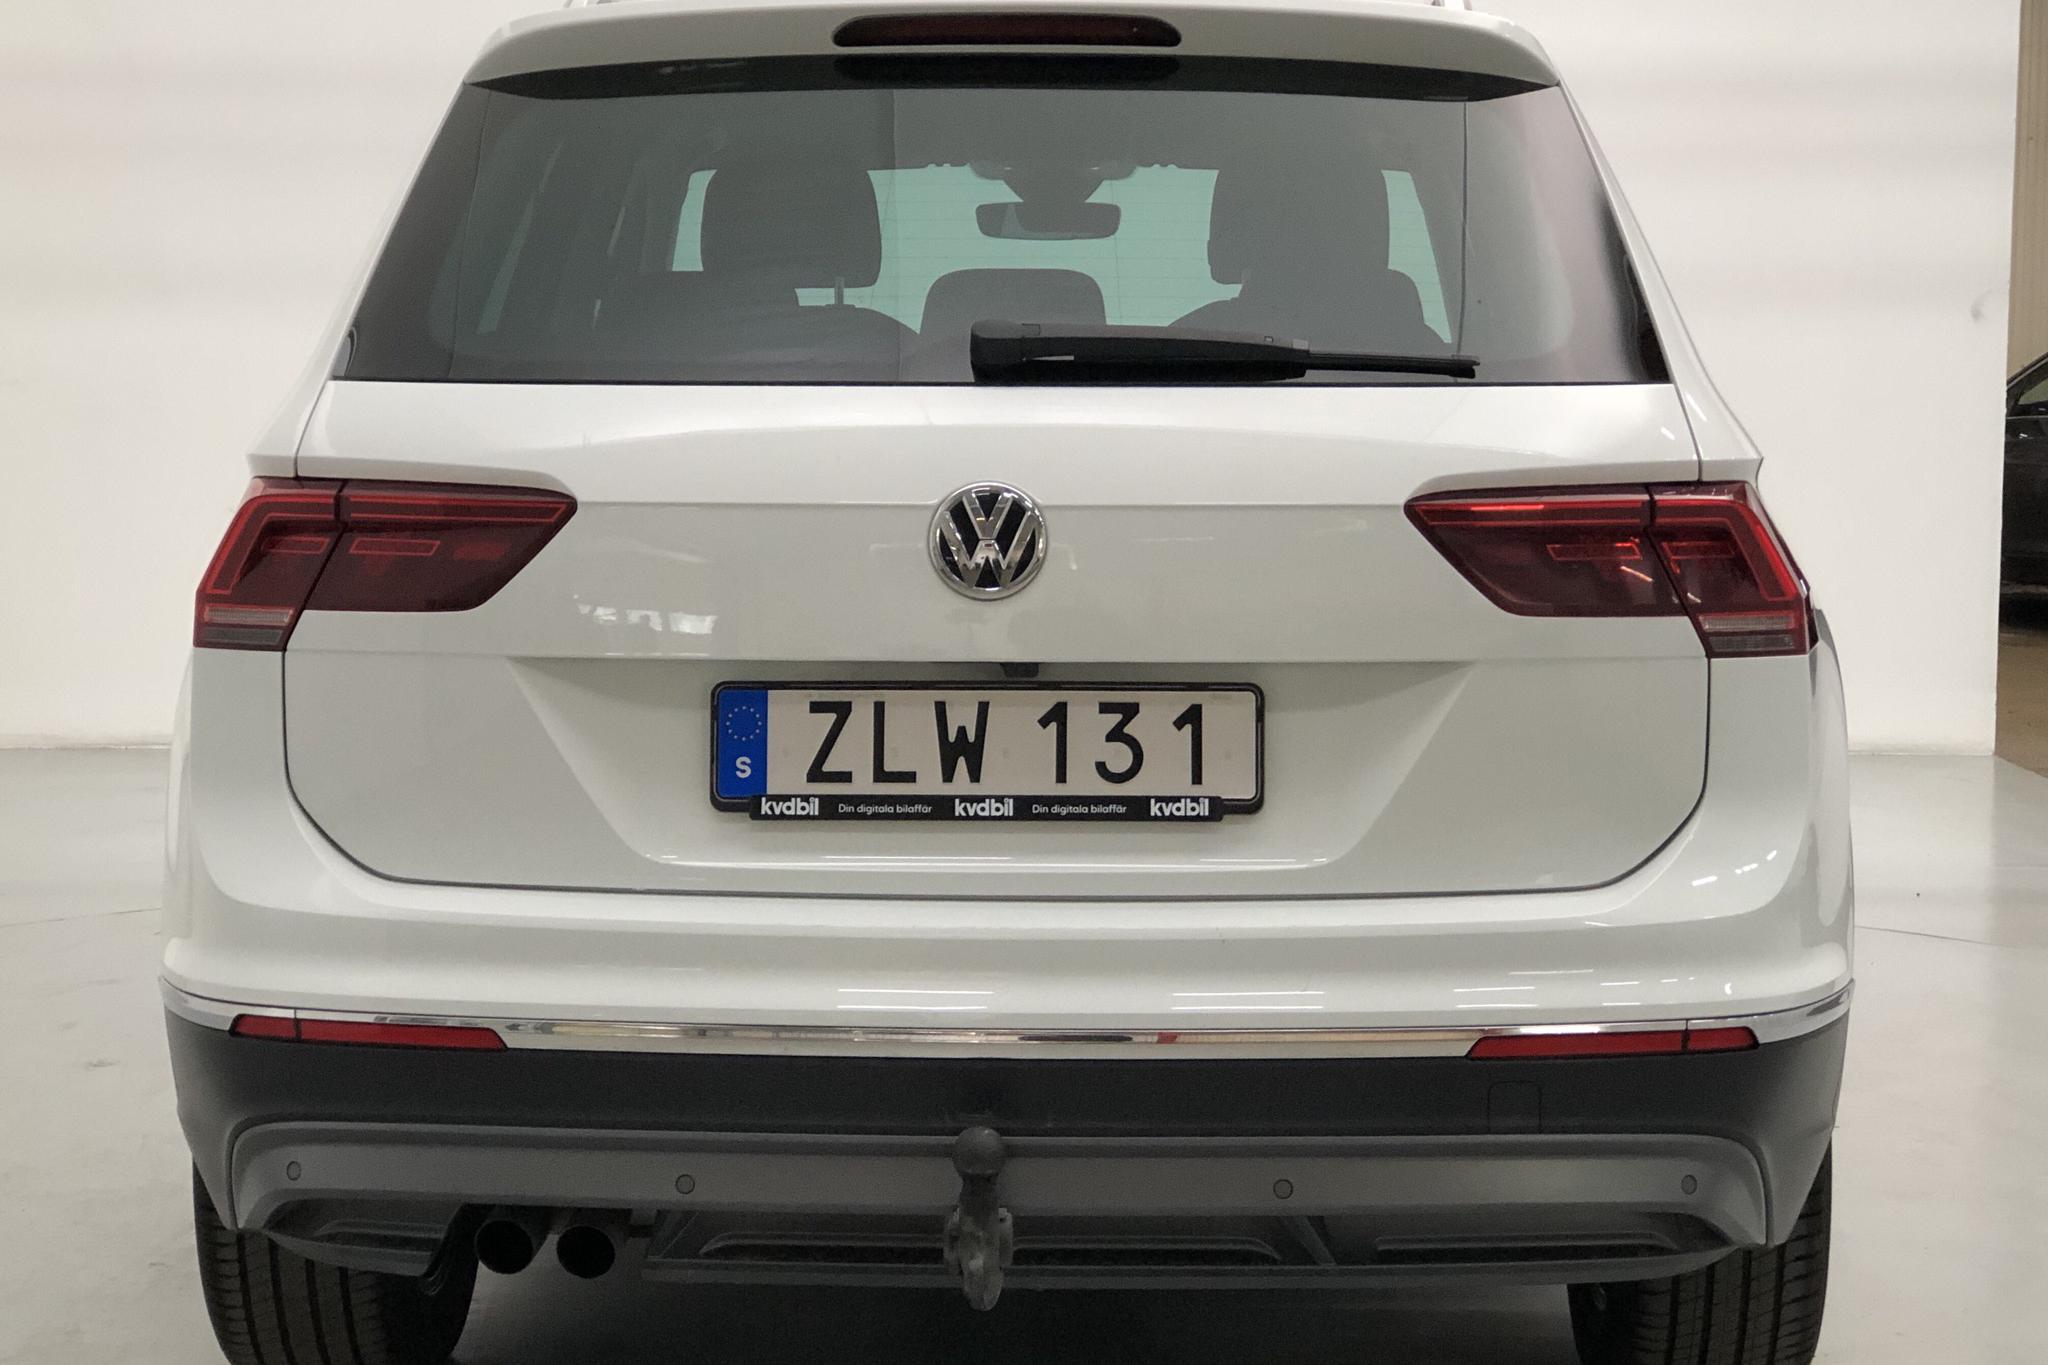 VW Tiguan 2.0 TDI 4MOTION (190hk) - 125 030 km - Automatic - white - 2018